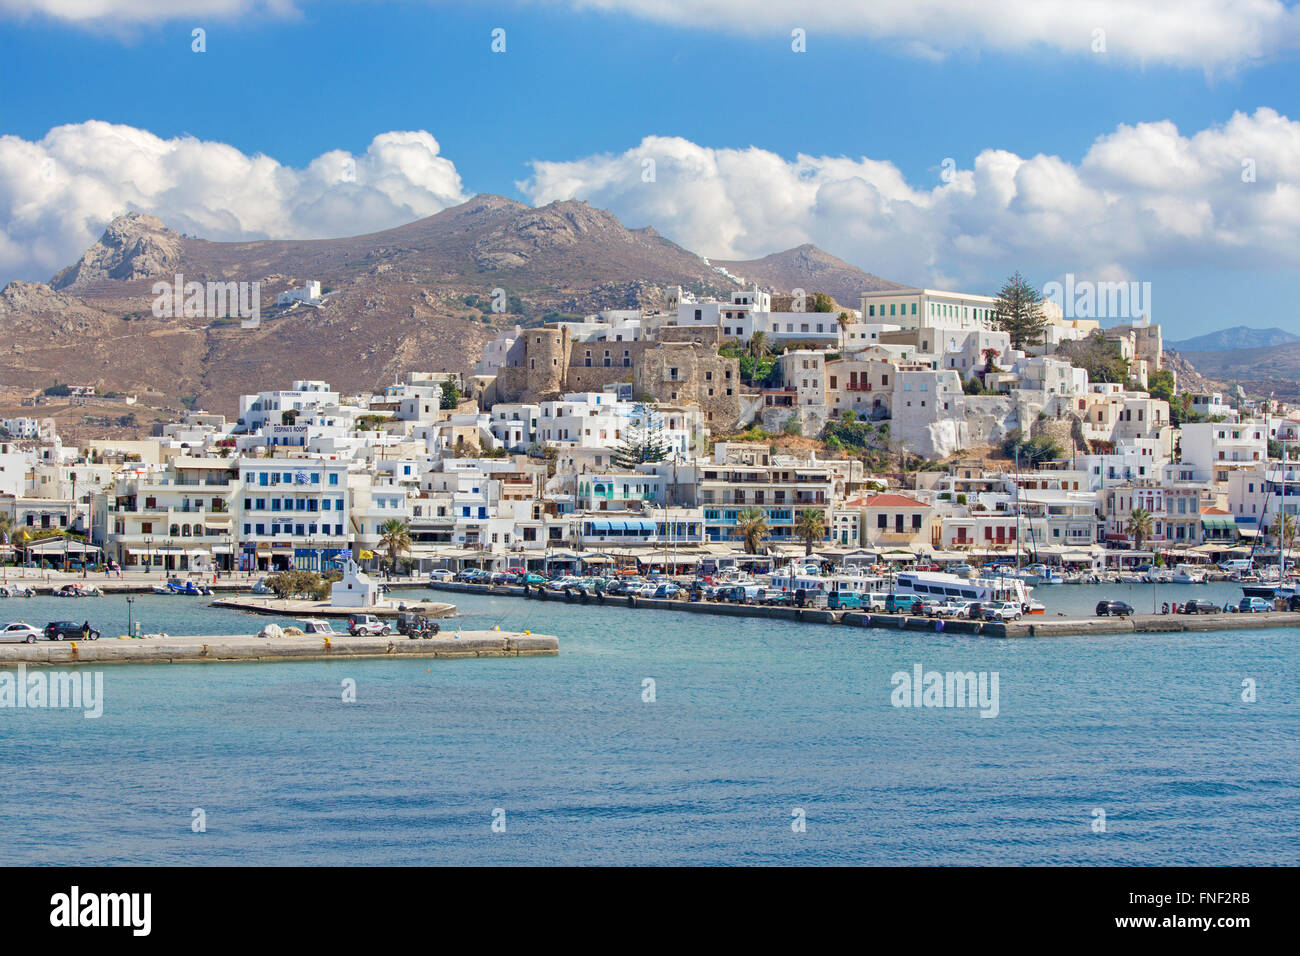 CHORA, Griechenland - 6. Oktober 2015: Die Stadt Chora (Chora) auf der Insel Naxos in der Ägäis. Stockfoto